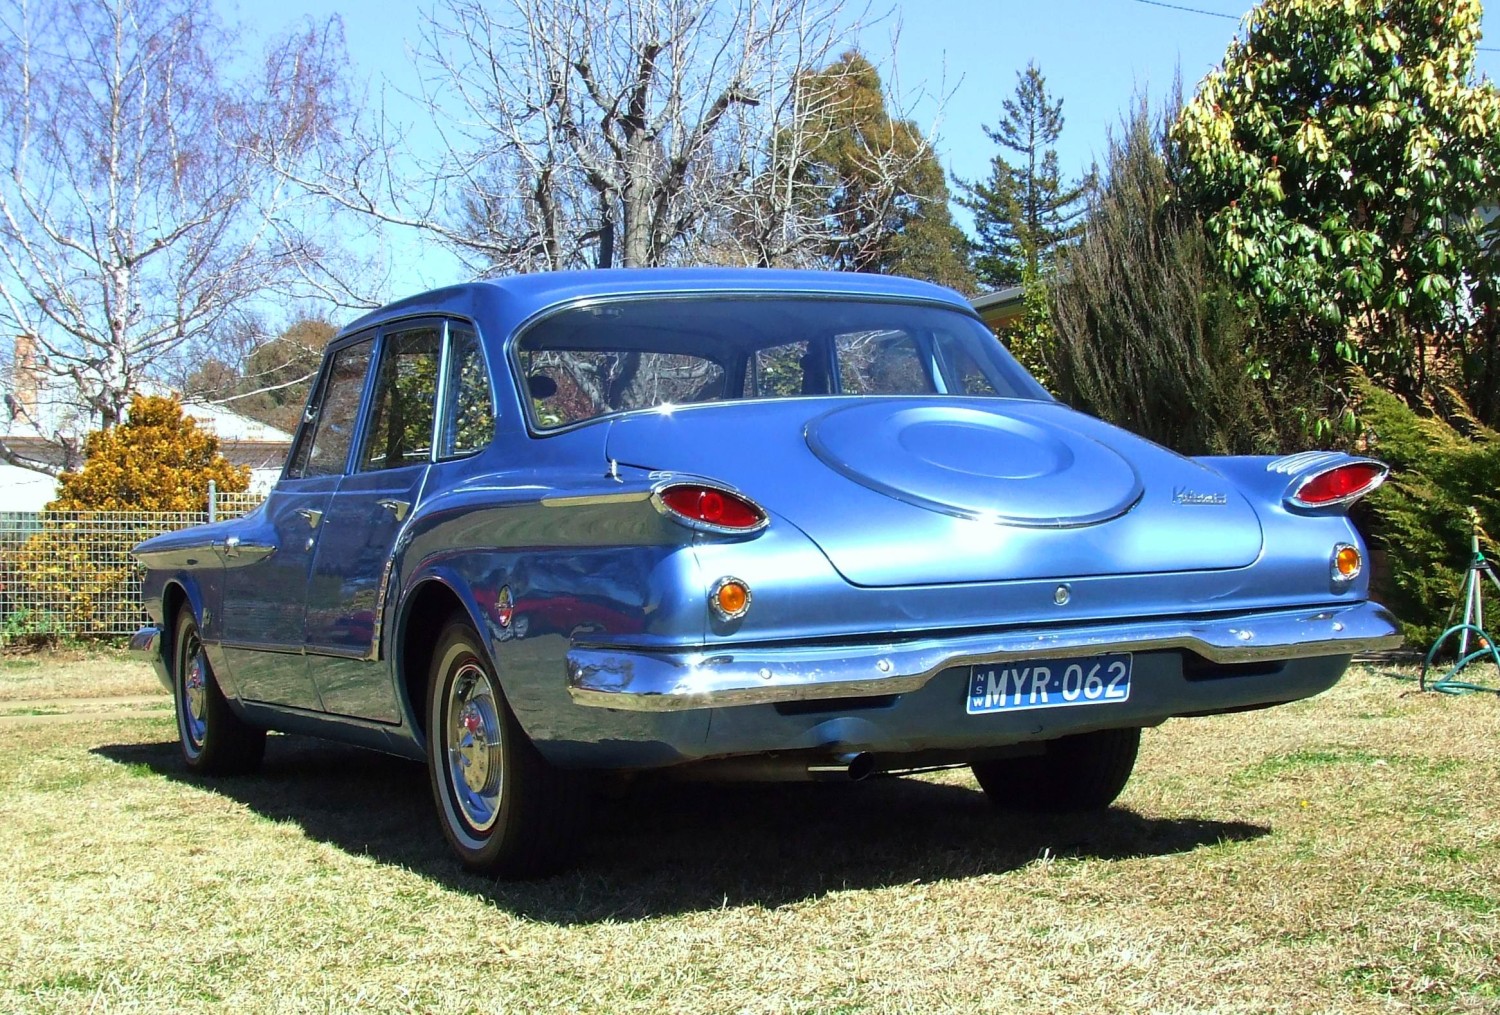 1962 Chrysler R series Valiant